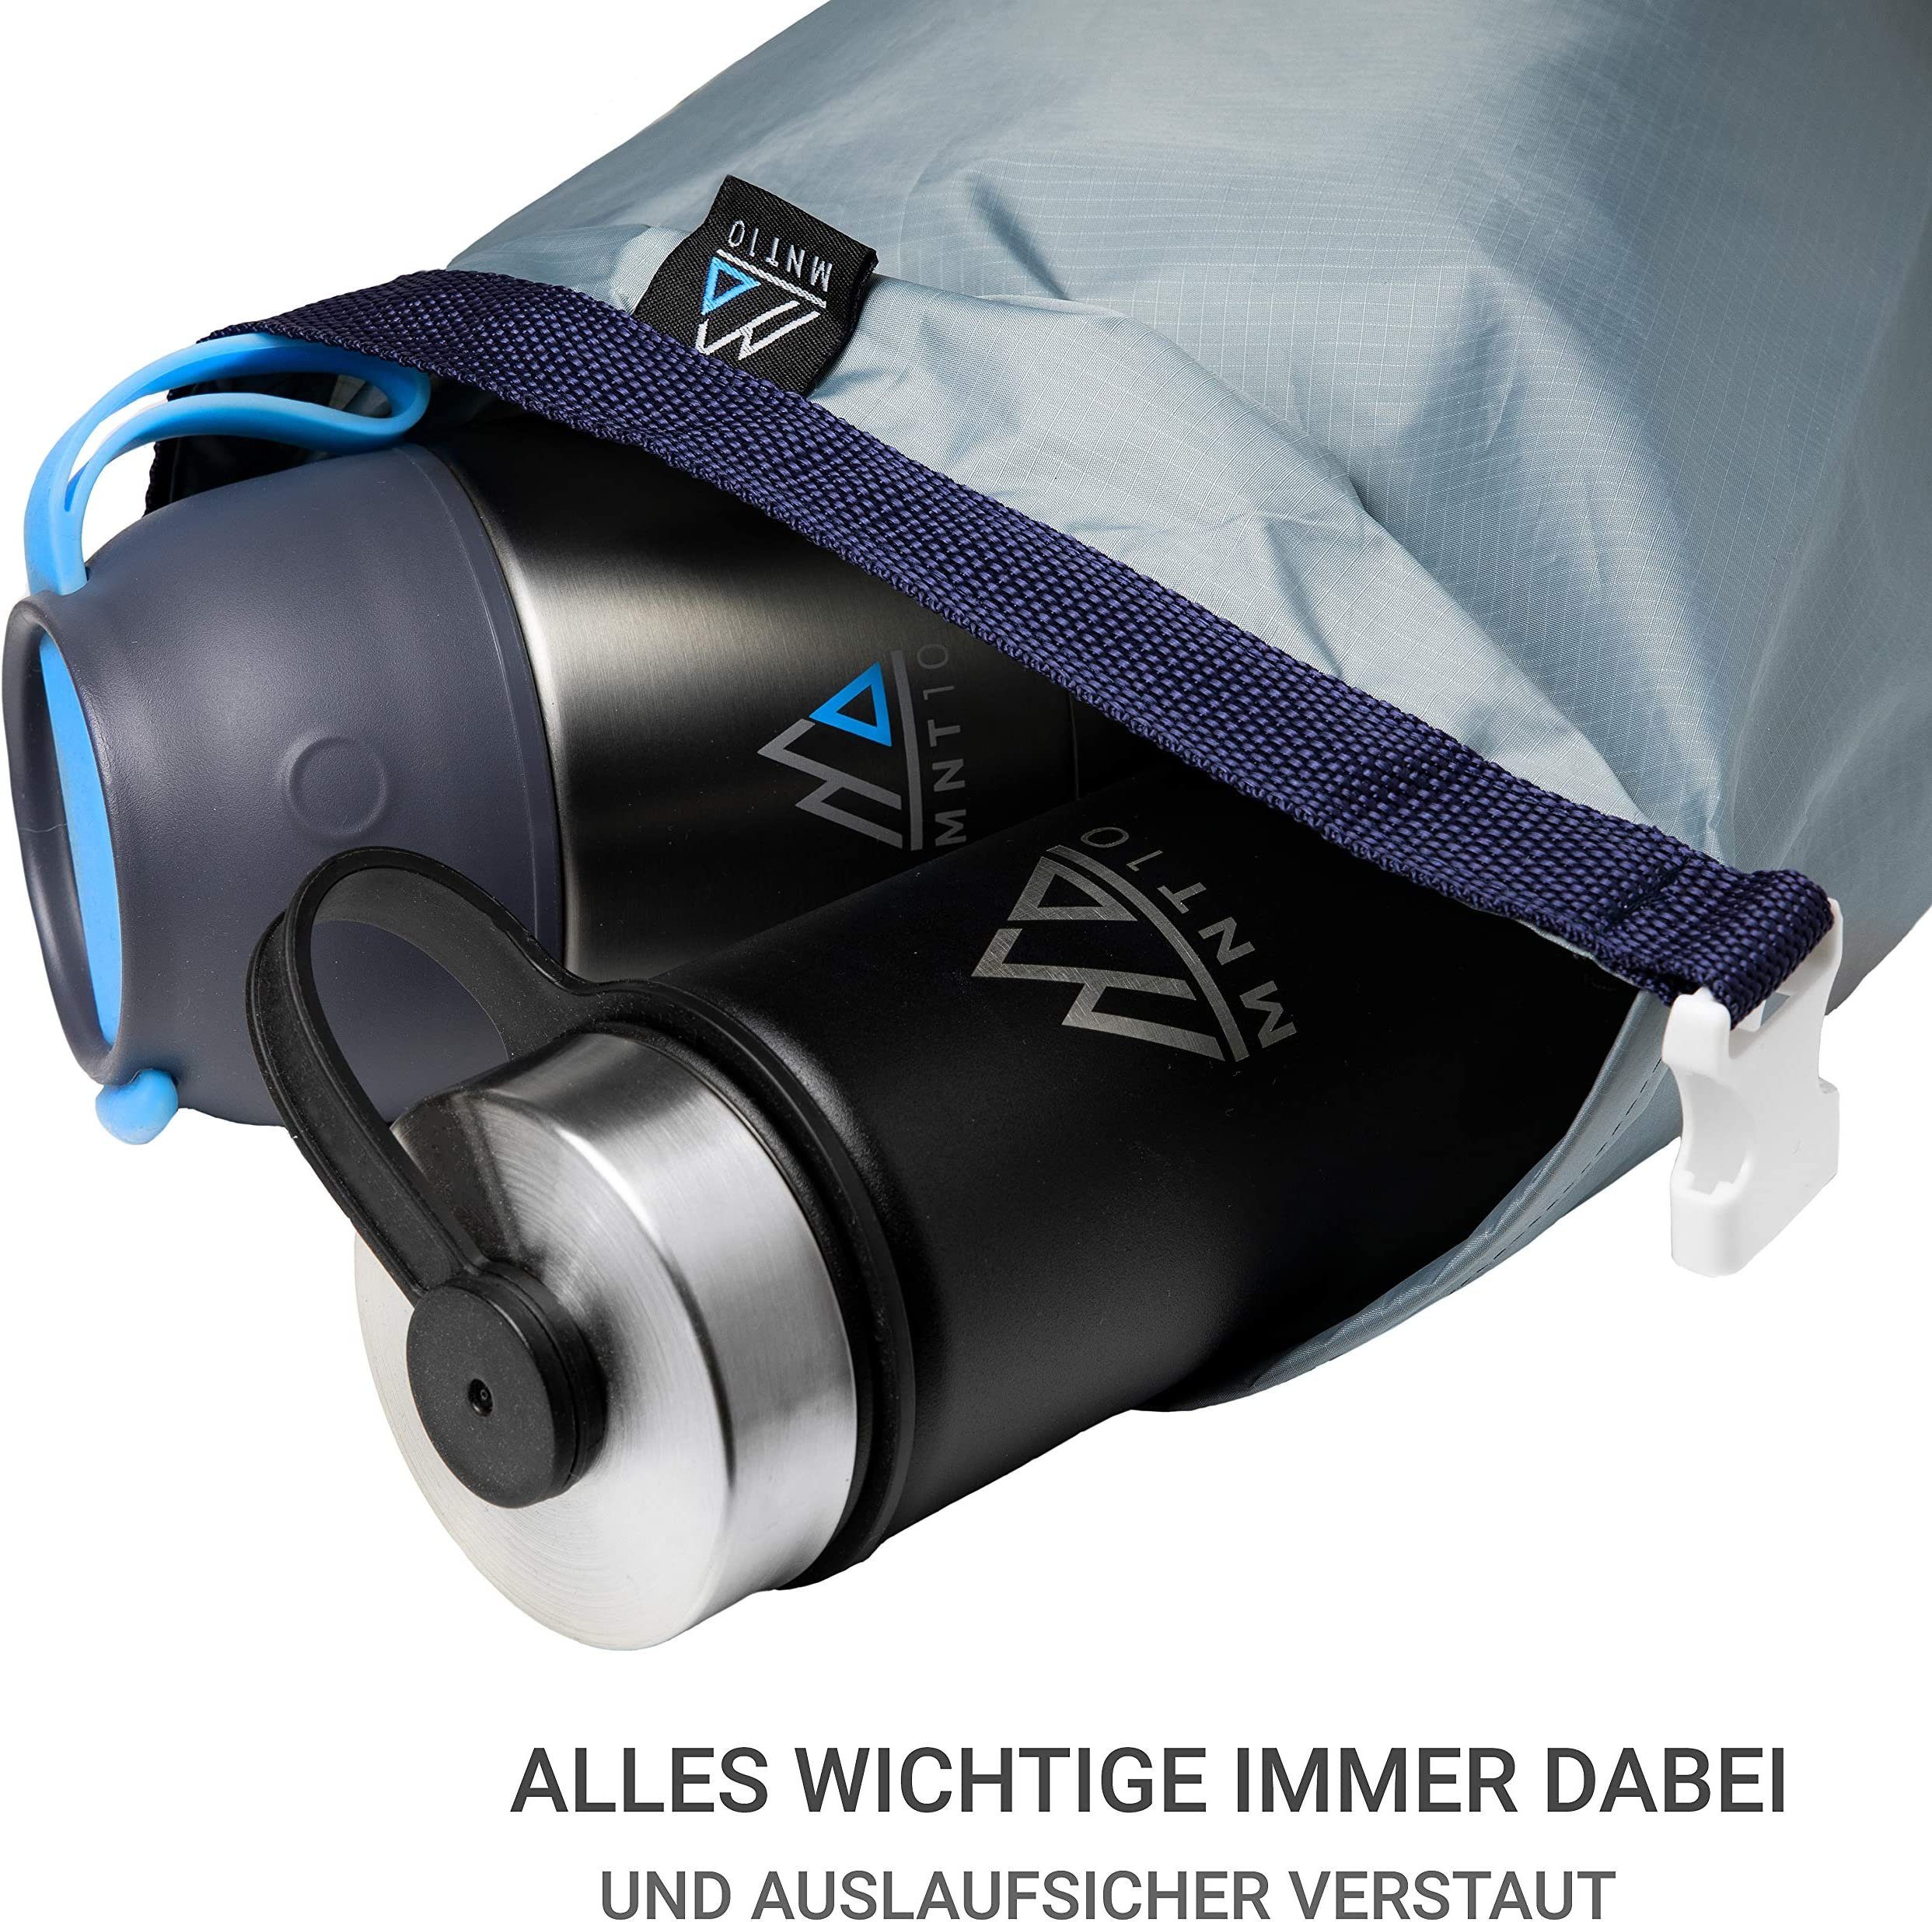 MNT10 Sporttasche Dry Ultra-Light und I I Trockenbeutel leicht Wasserfeste Outdoor Für Camping Bag Reisen & widerstandsfähig und Tasche Outdoor